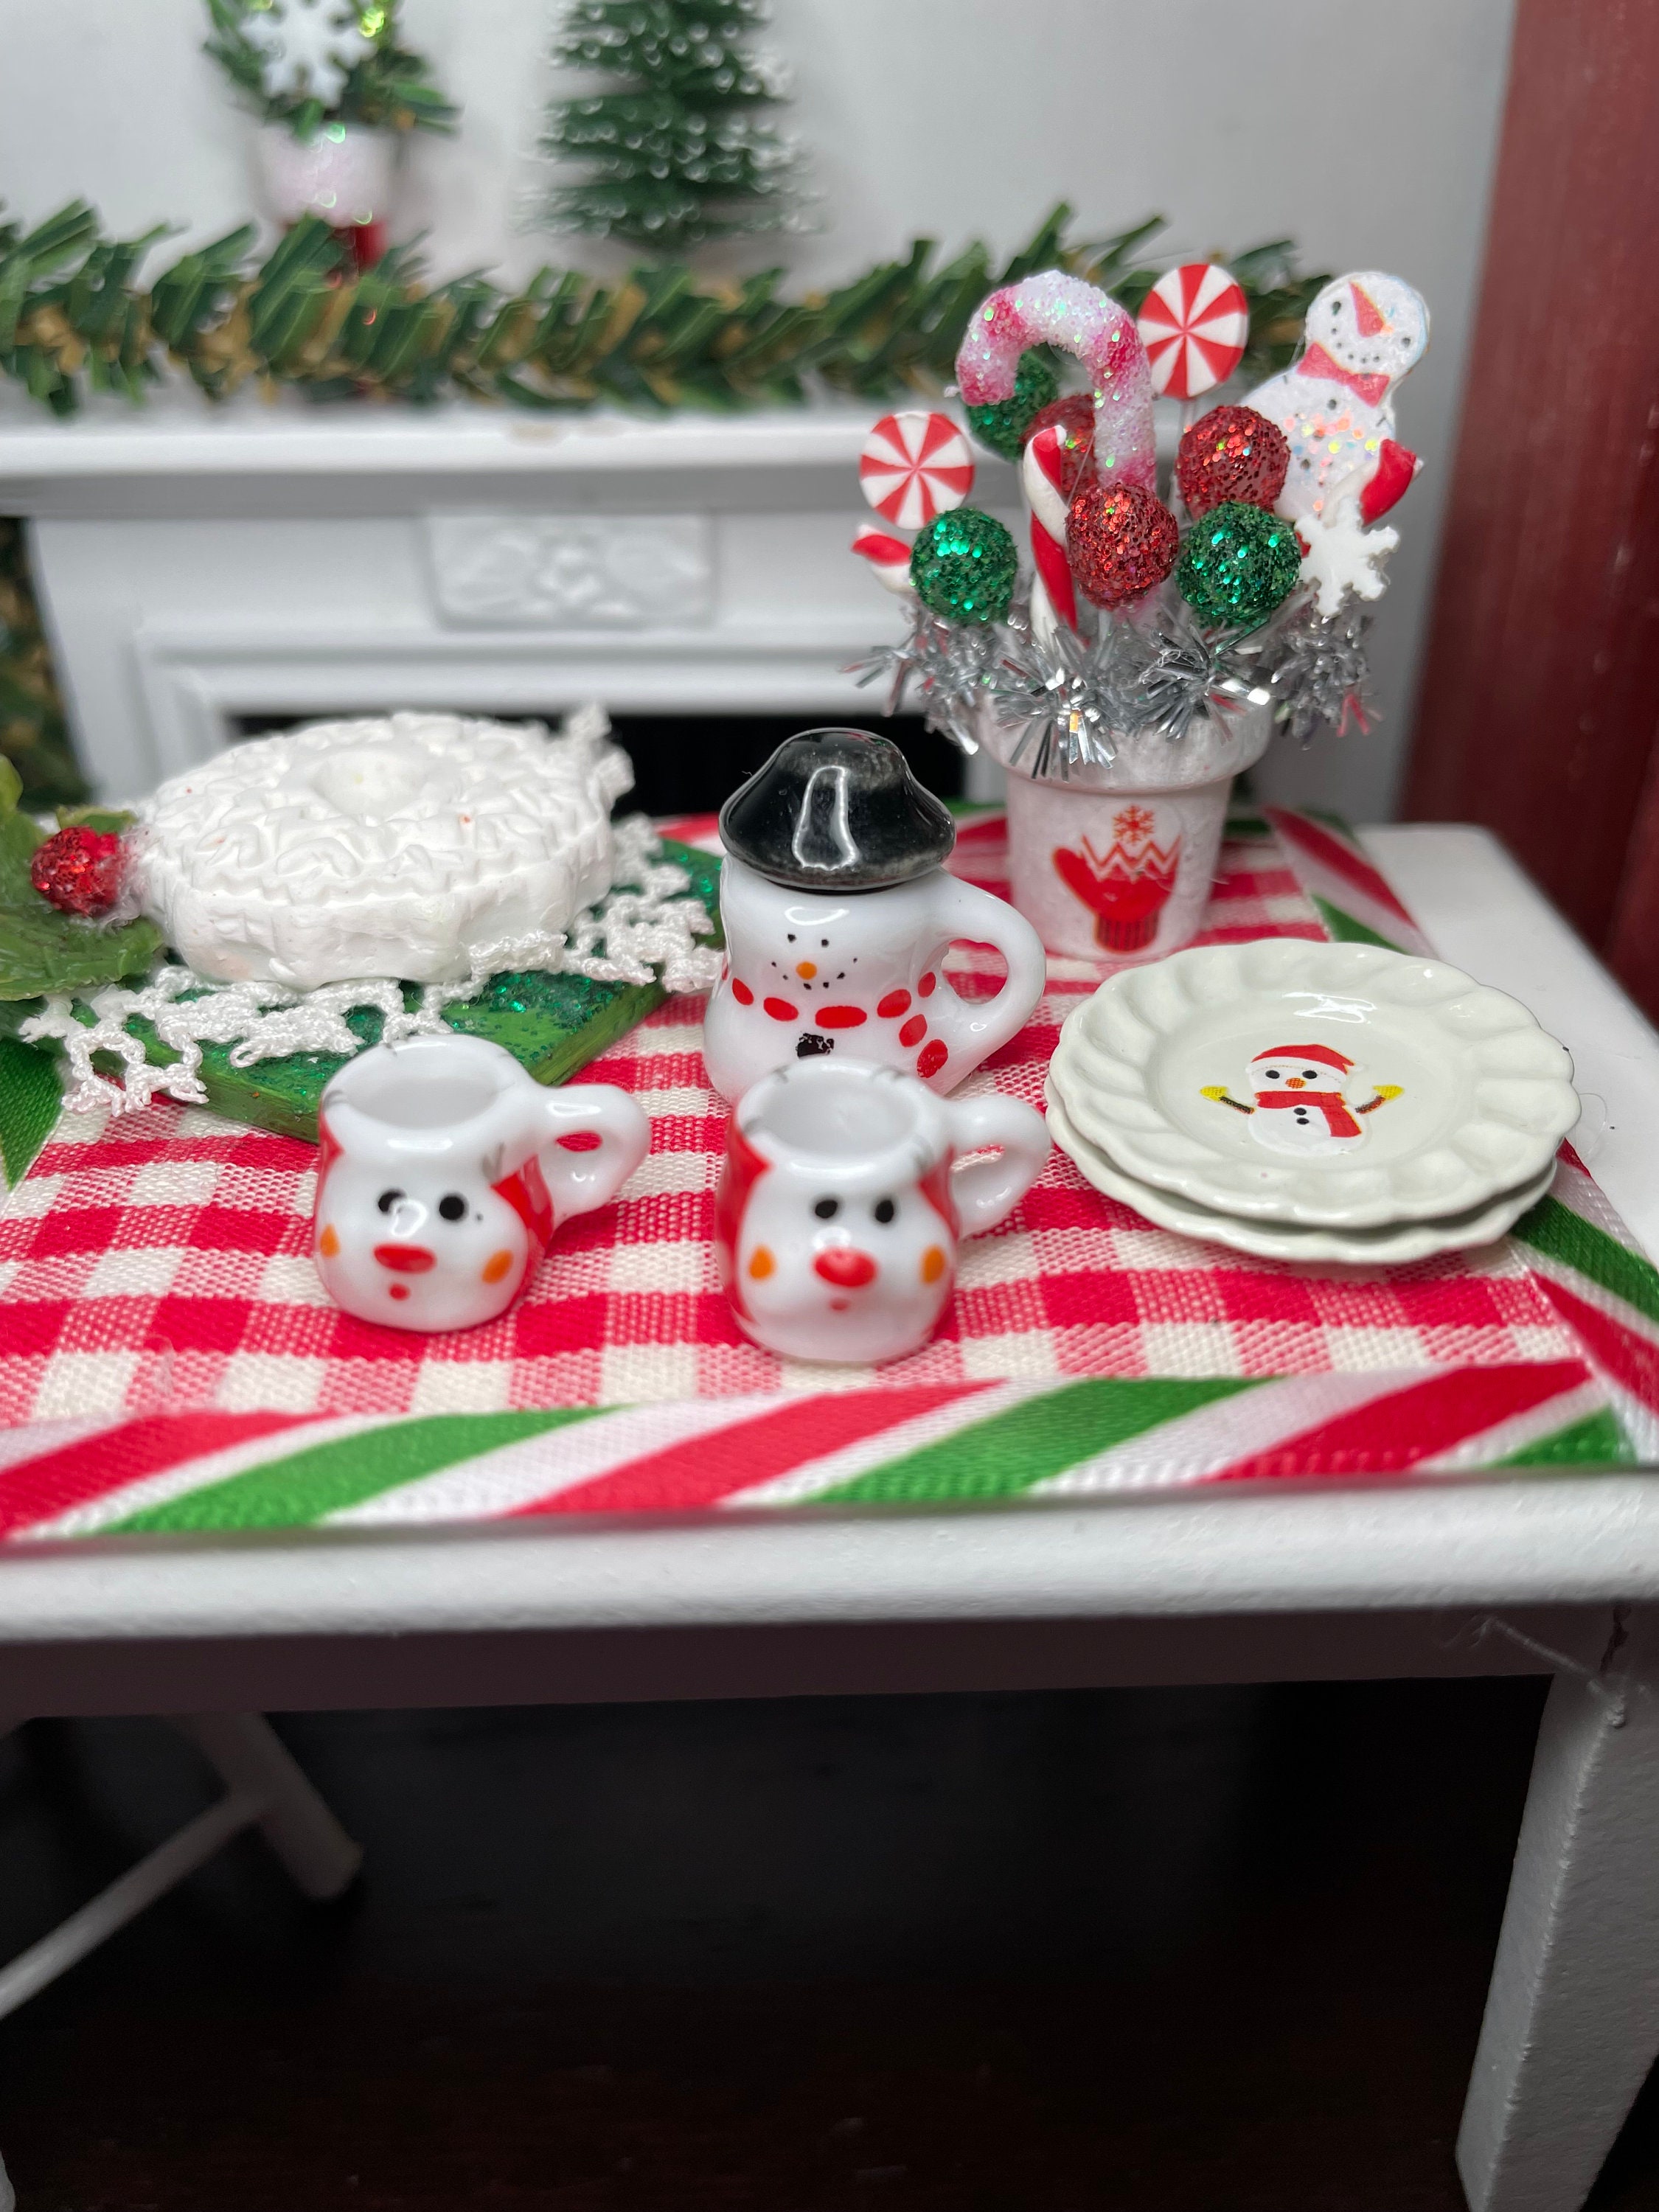 1/12 Miniature Dollhouse Porcelain Mini Teapot Snowman Tea Cup Set for  Barbies Doll Kitchen Christmas Decoration Accessories